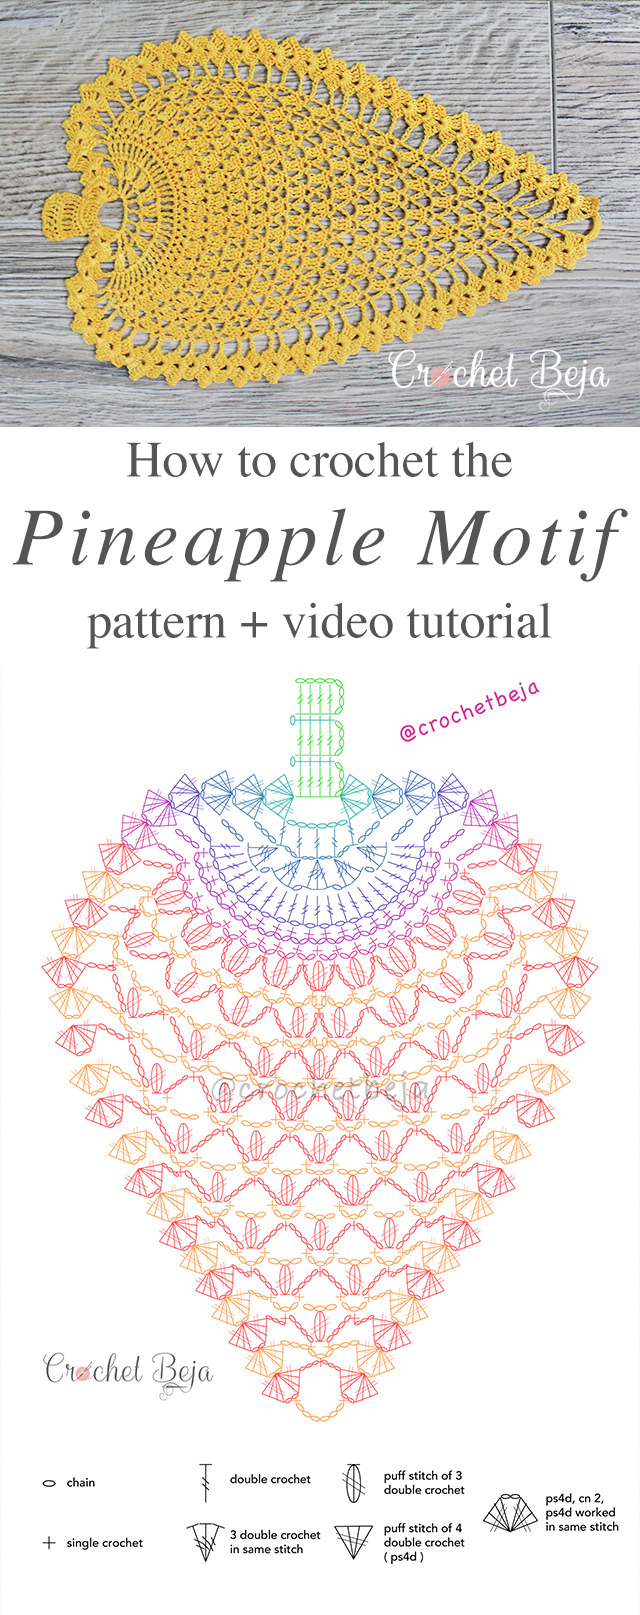 Crochet Pattern Pineapple Crochet Pineapple Pattern Anywane Can Learn Crochetbeja